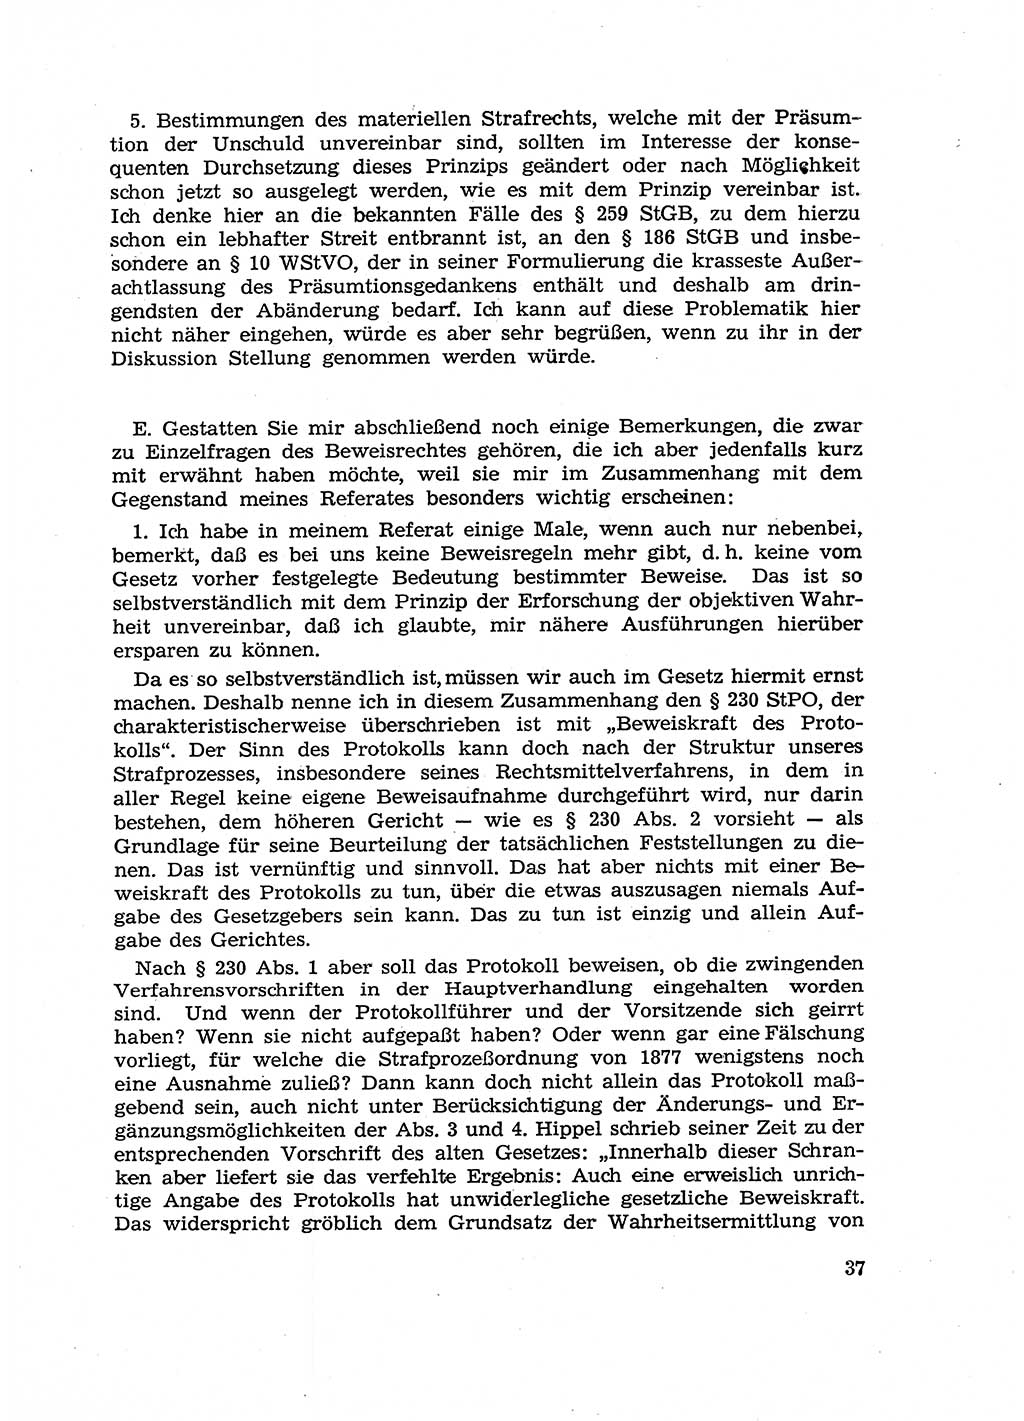 Fragen des Beweisrechts im Strafprozess [Deutsche Demokratische Republik (DDR)] 1956, Seite 37 (Fr. BeweisR. Str.-Proz. DDR 1956, S. 37)